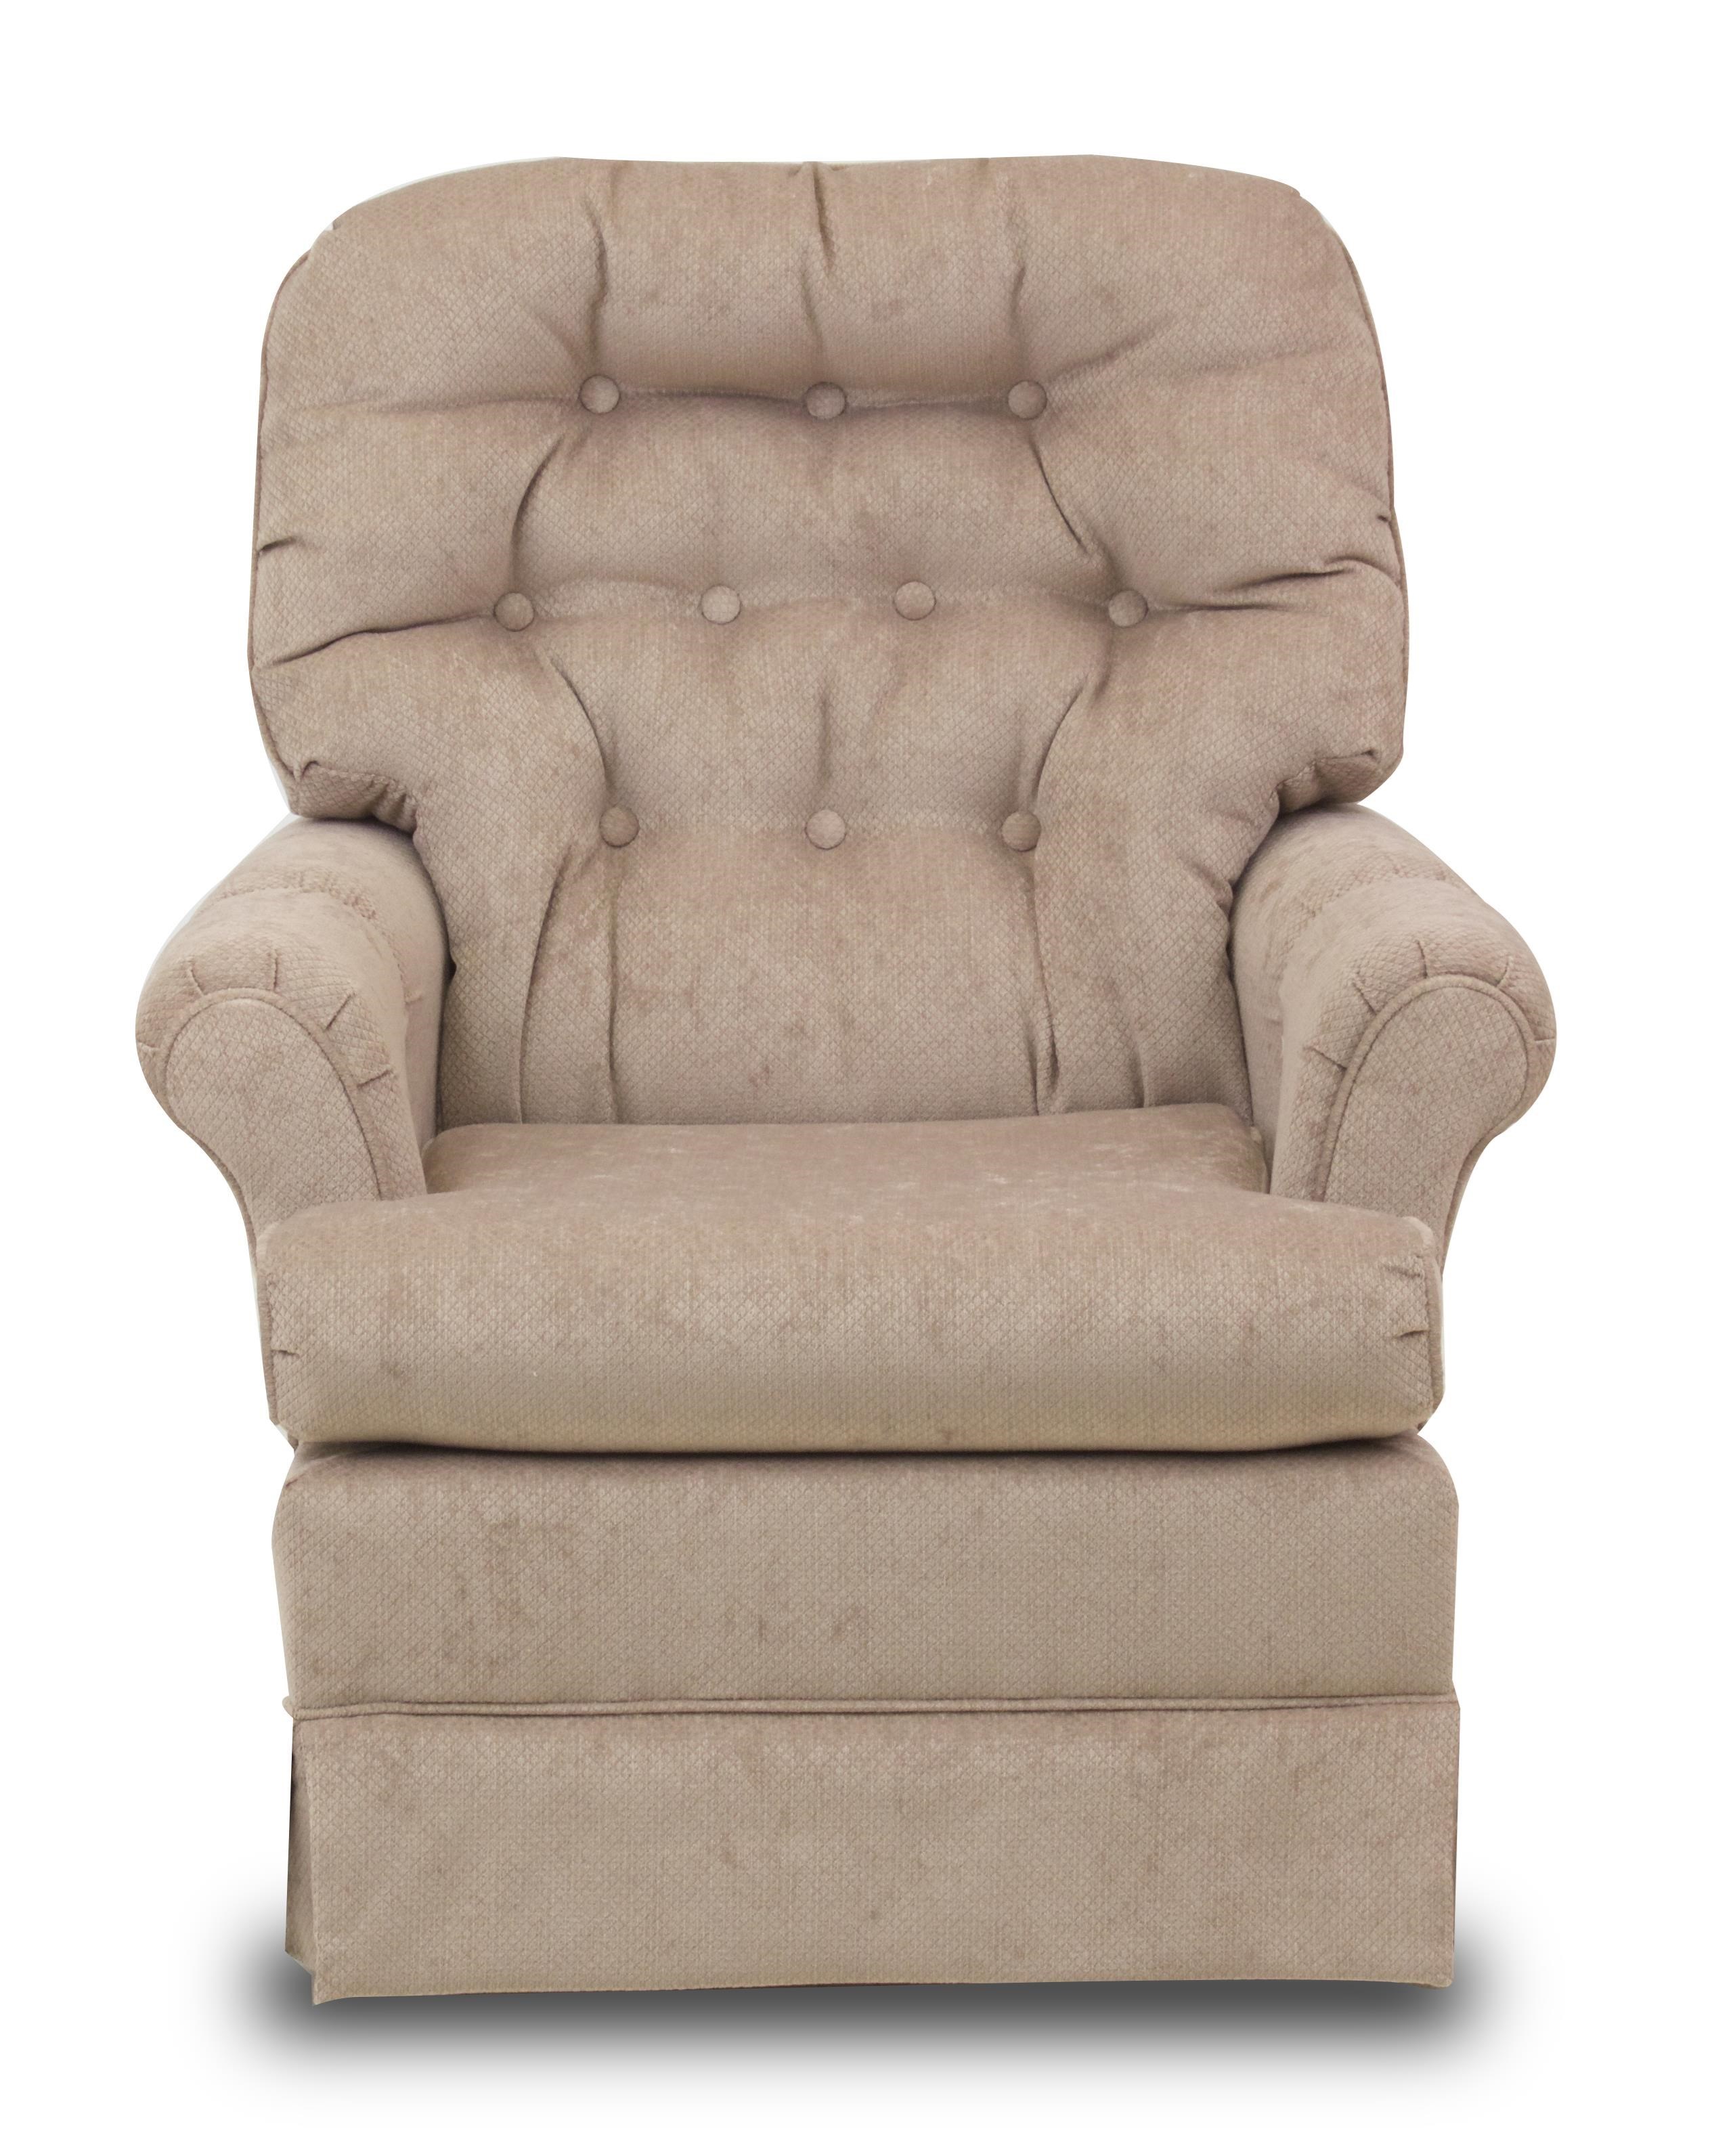 Best Home Furnishings Swivel Glide ChairsMarla Swivel Rocker Chair